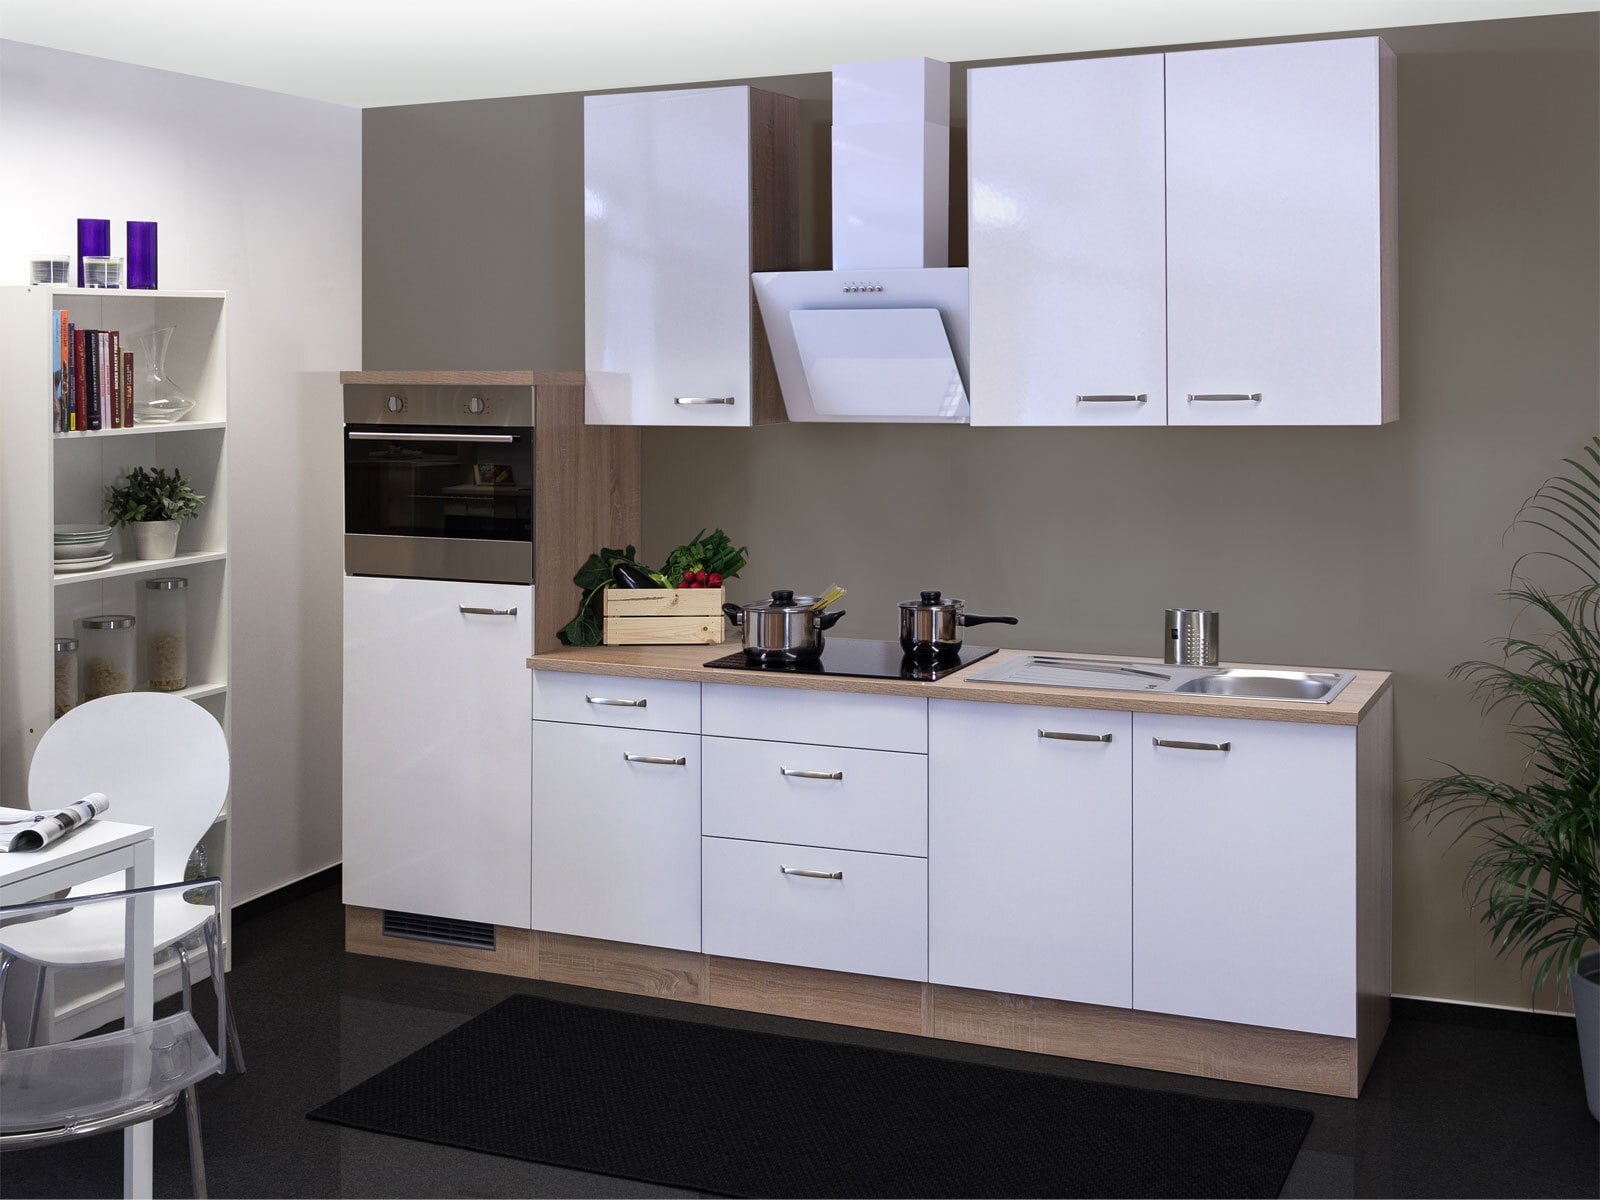 Küchenblock Valero Hochglanz Weiß / Eiche Sonoma inklusive E-Geräte